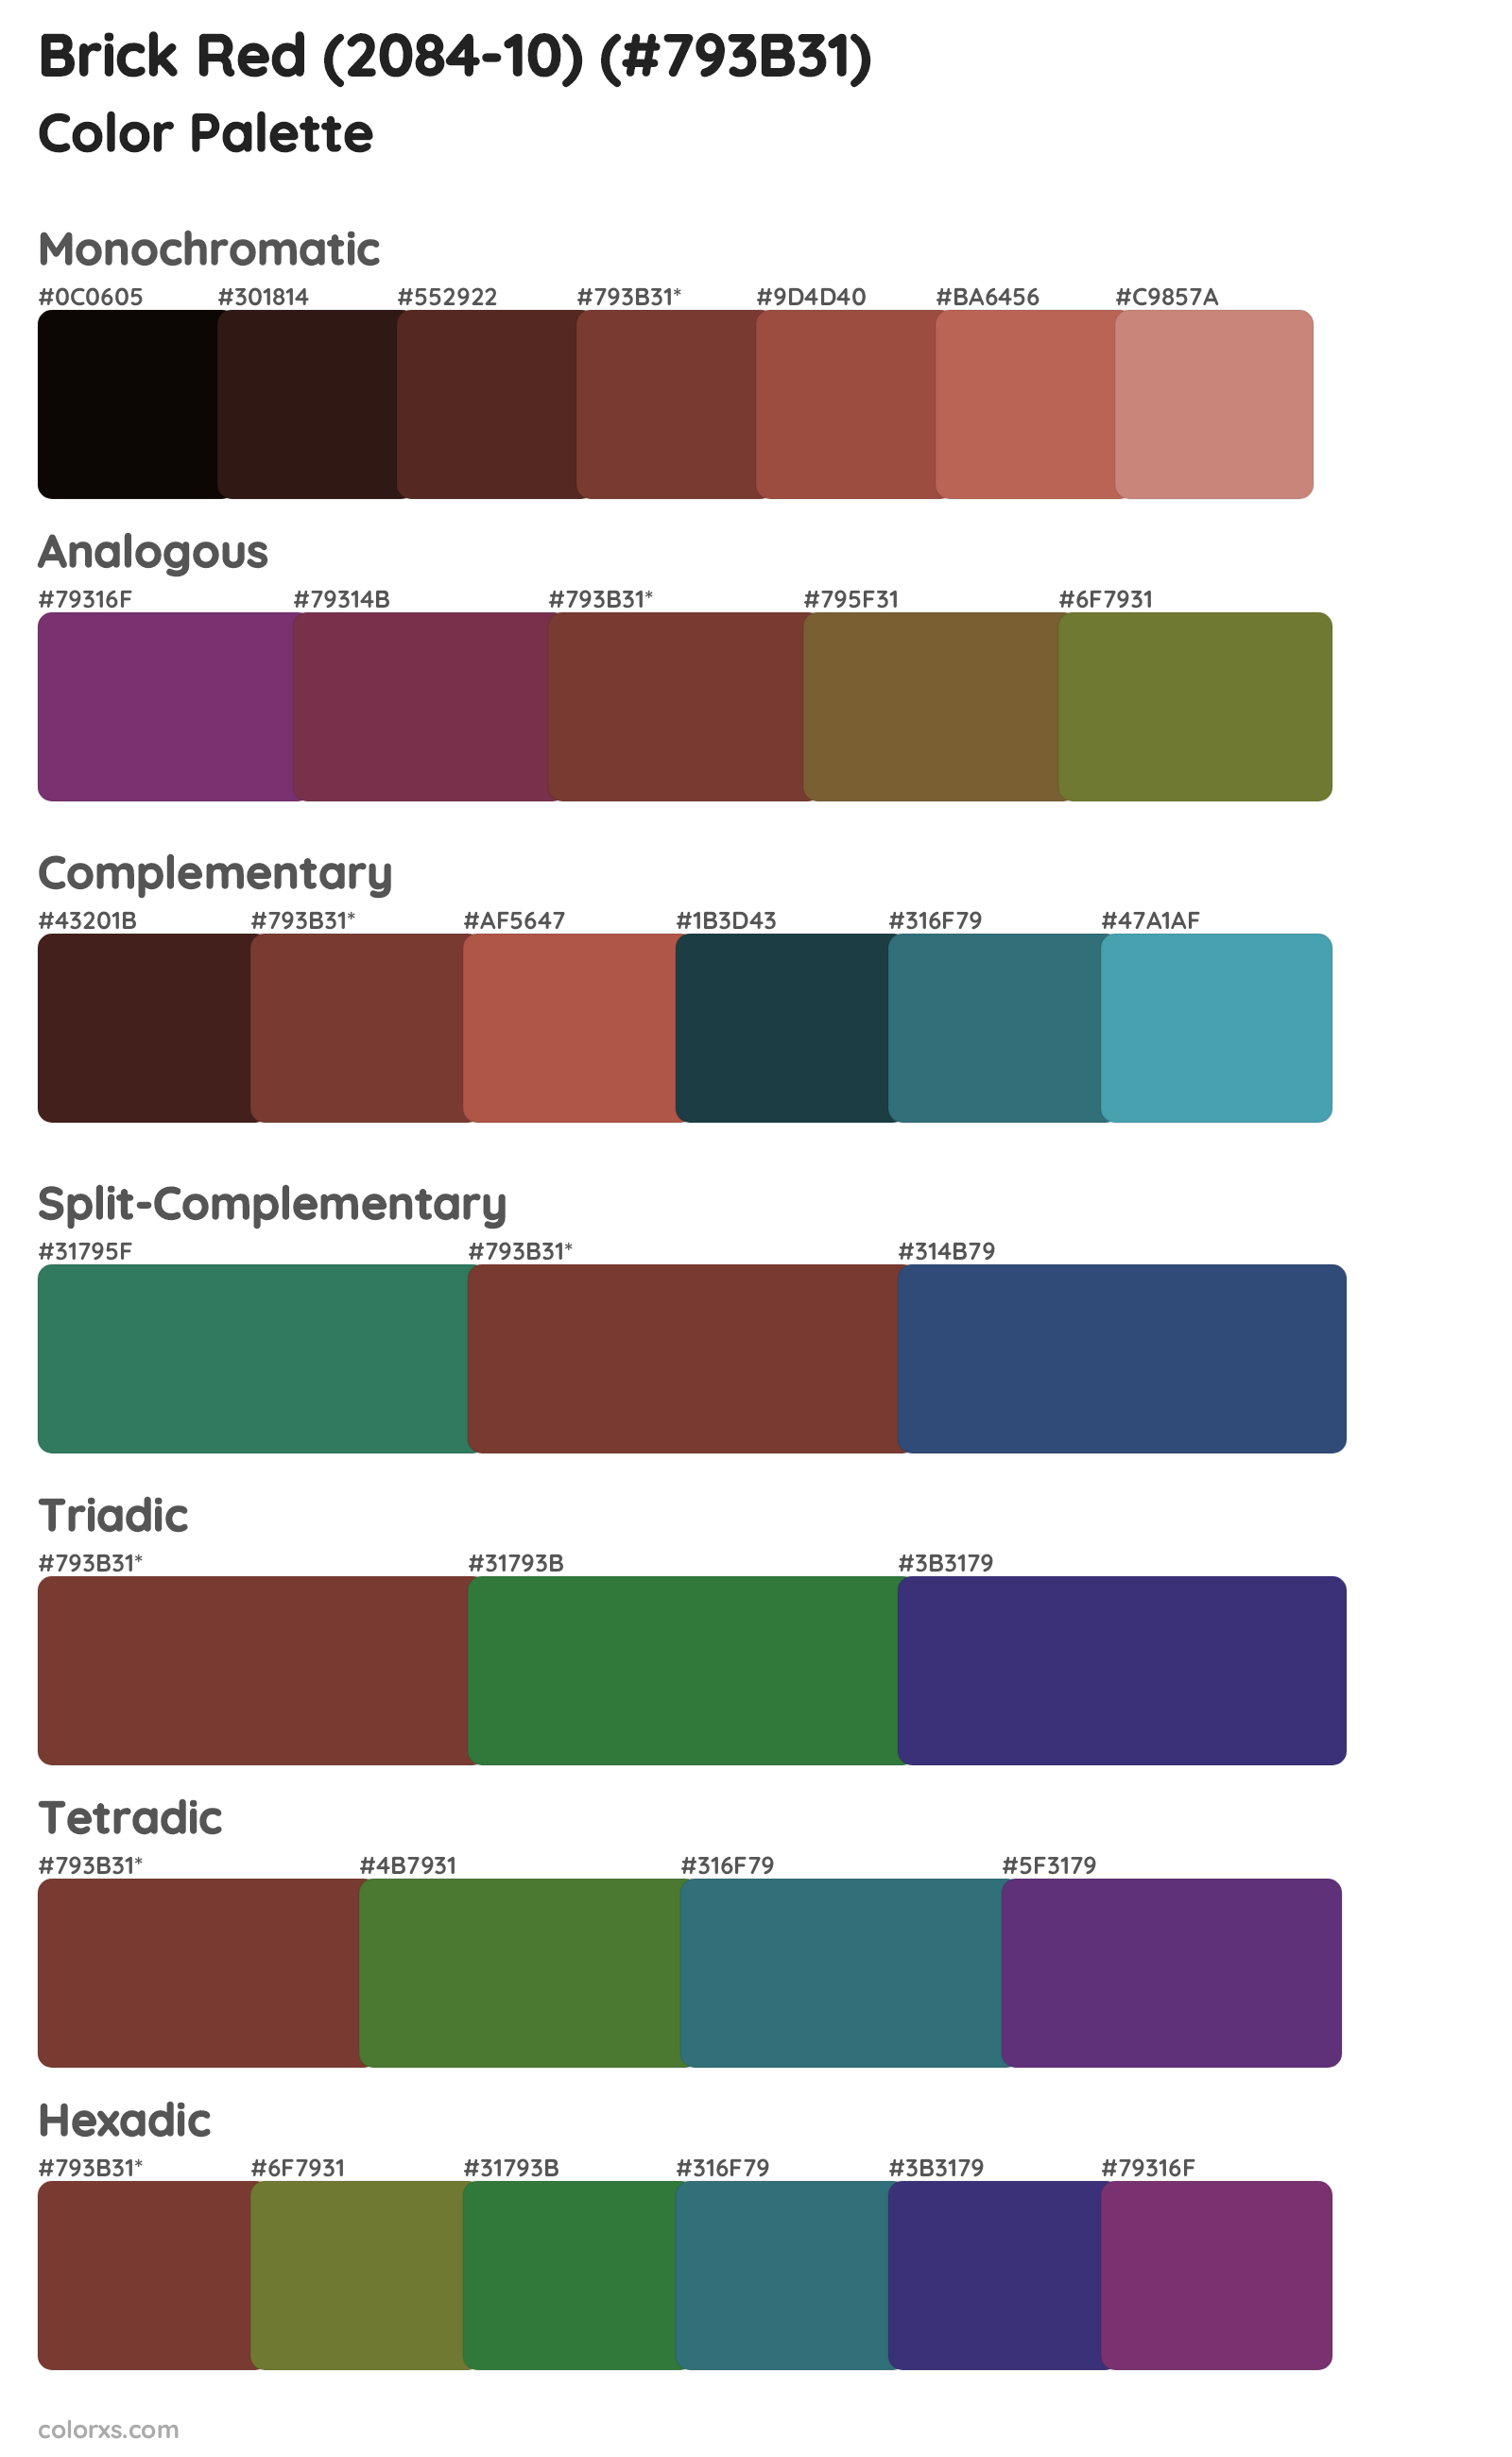 Brick Red (2084-10) Color Scheme Palettes